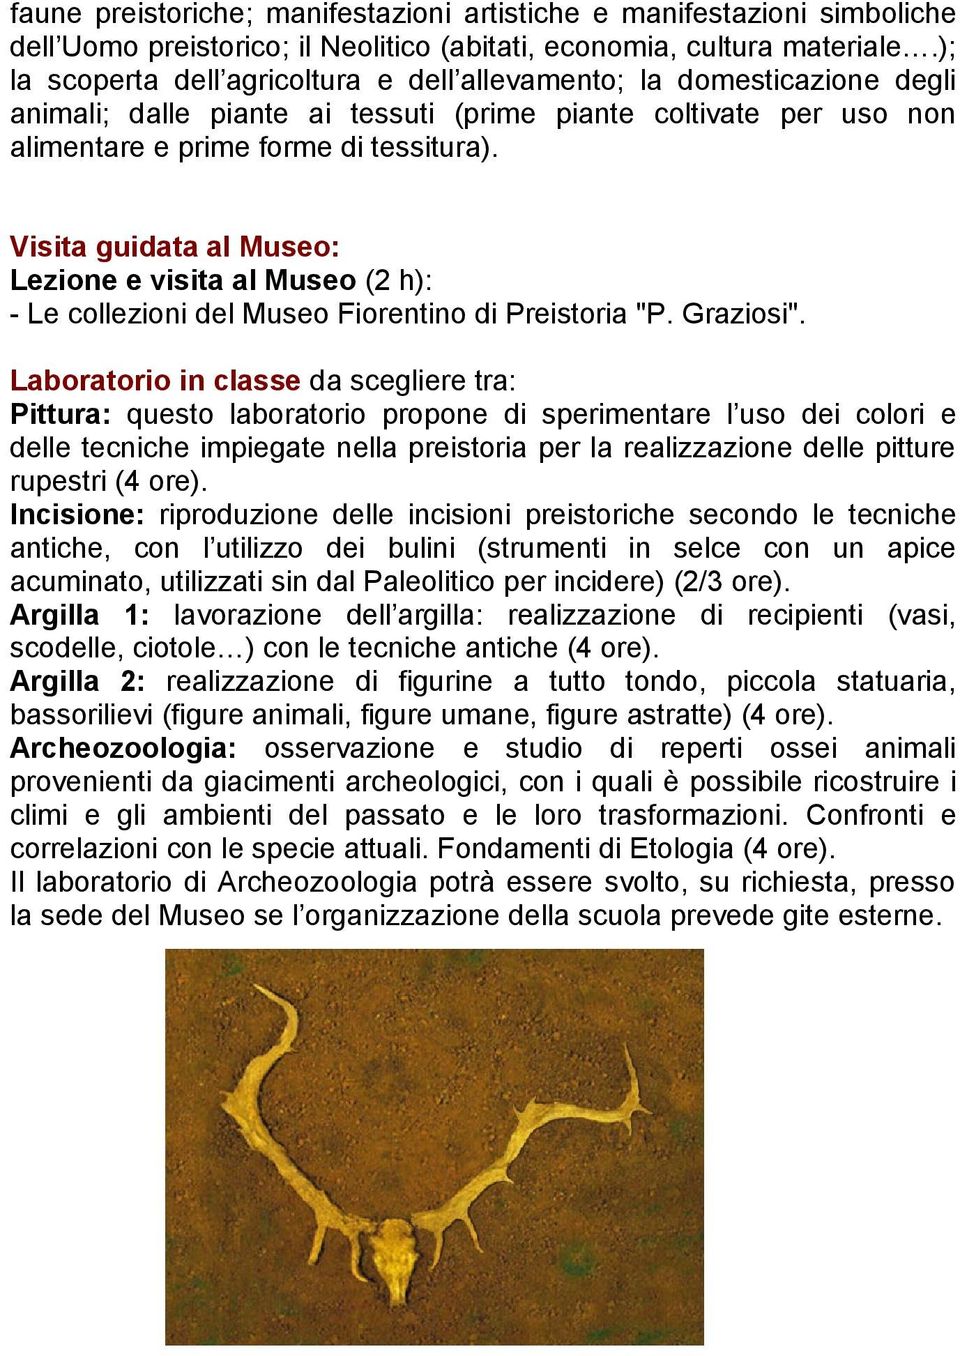 Visita guidata al Museo: Lezione e visita al Museo (2 h): - Le collezioni del Museo Fiorentino di Preistoria "P. Graziosi".